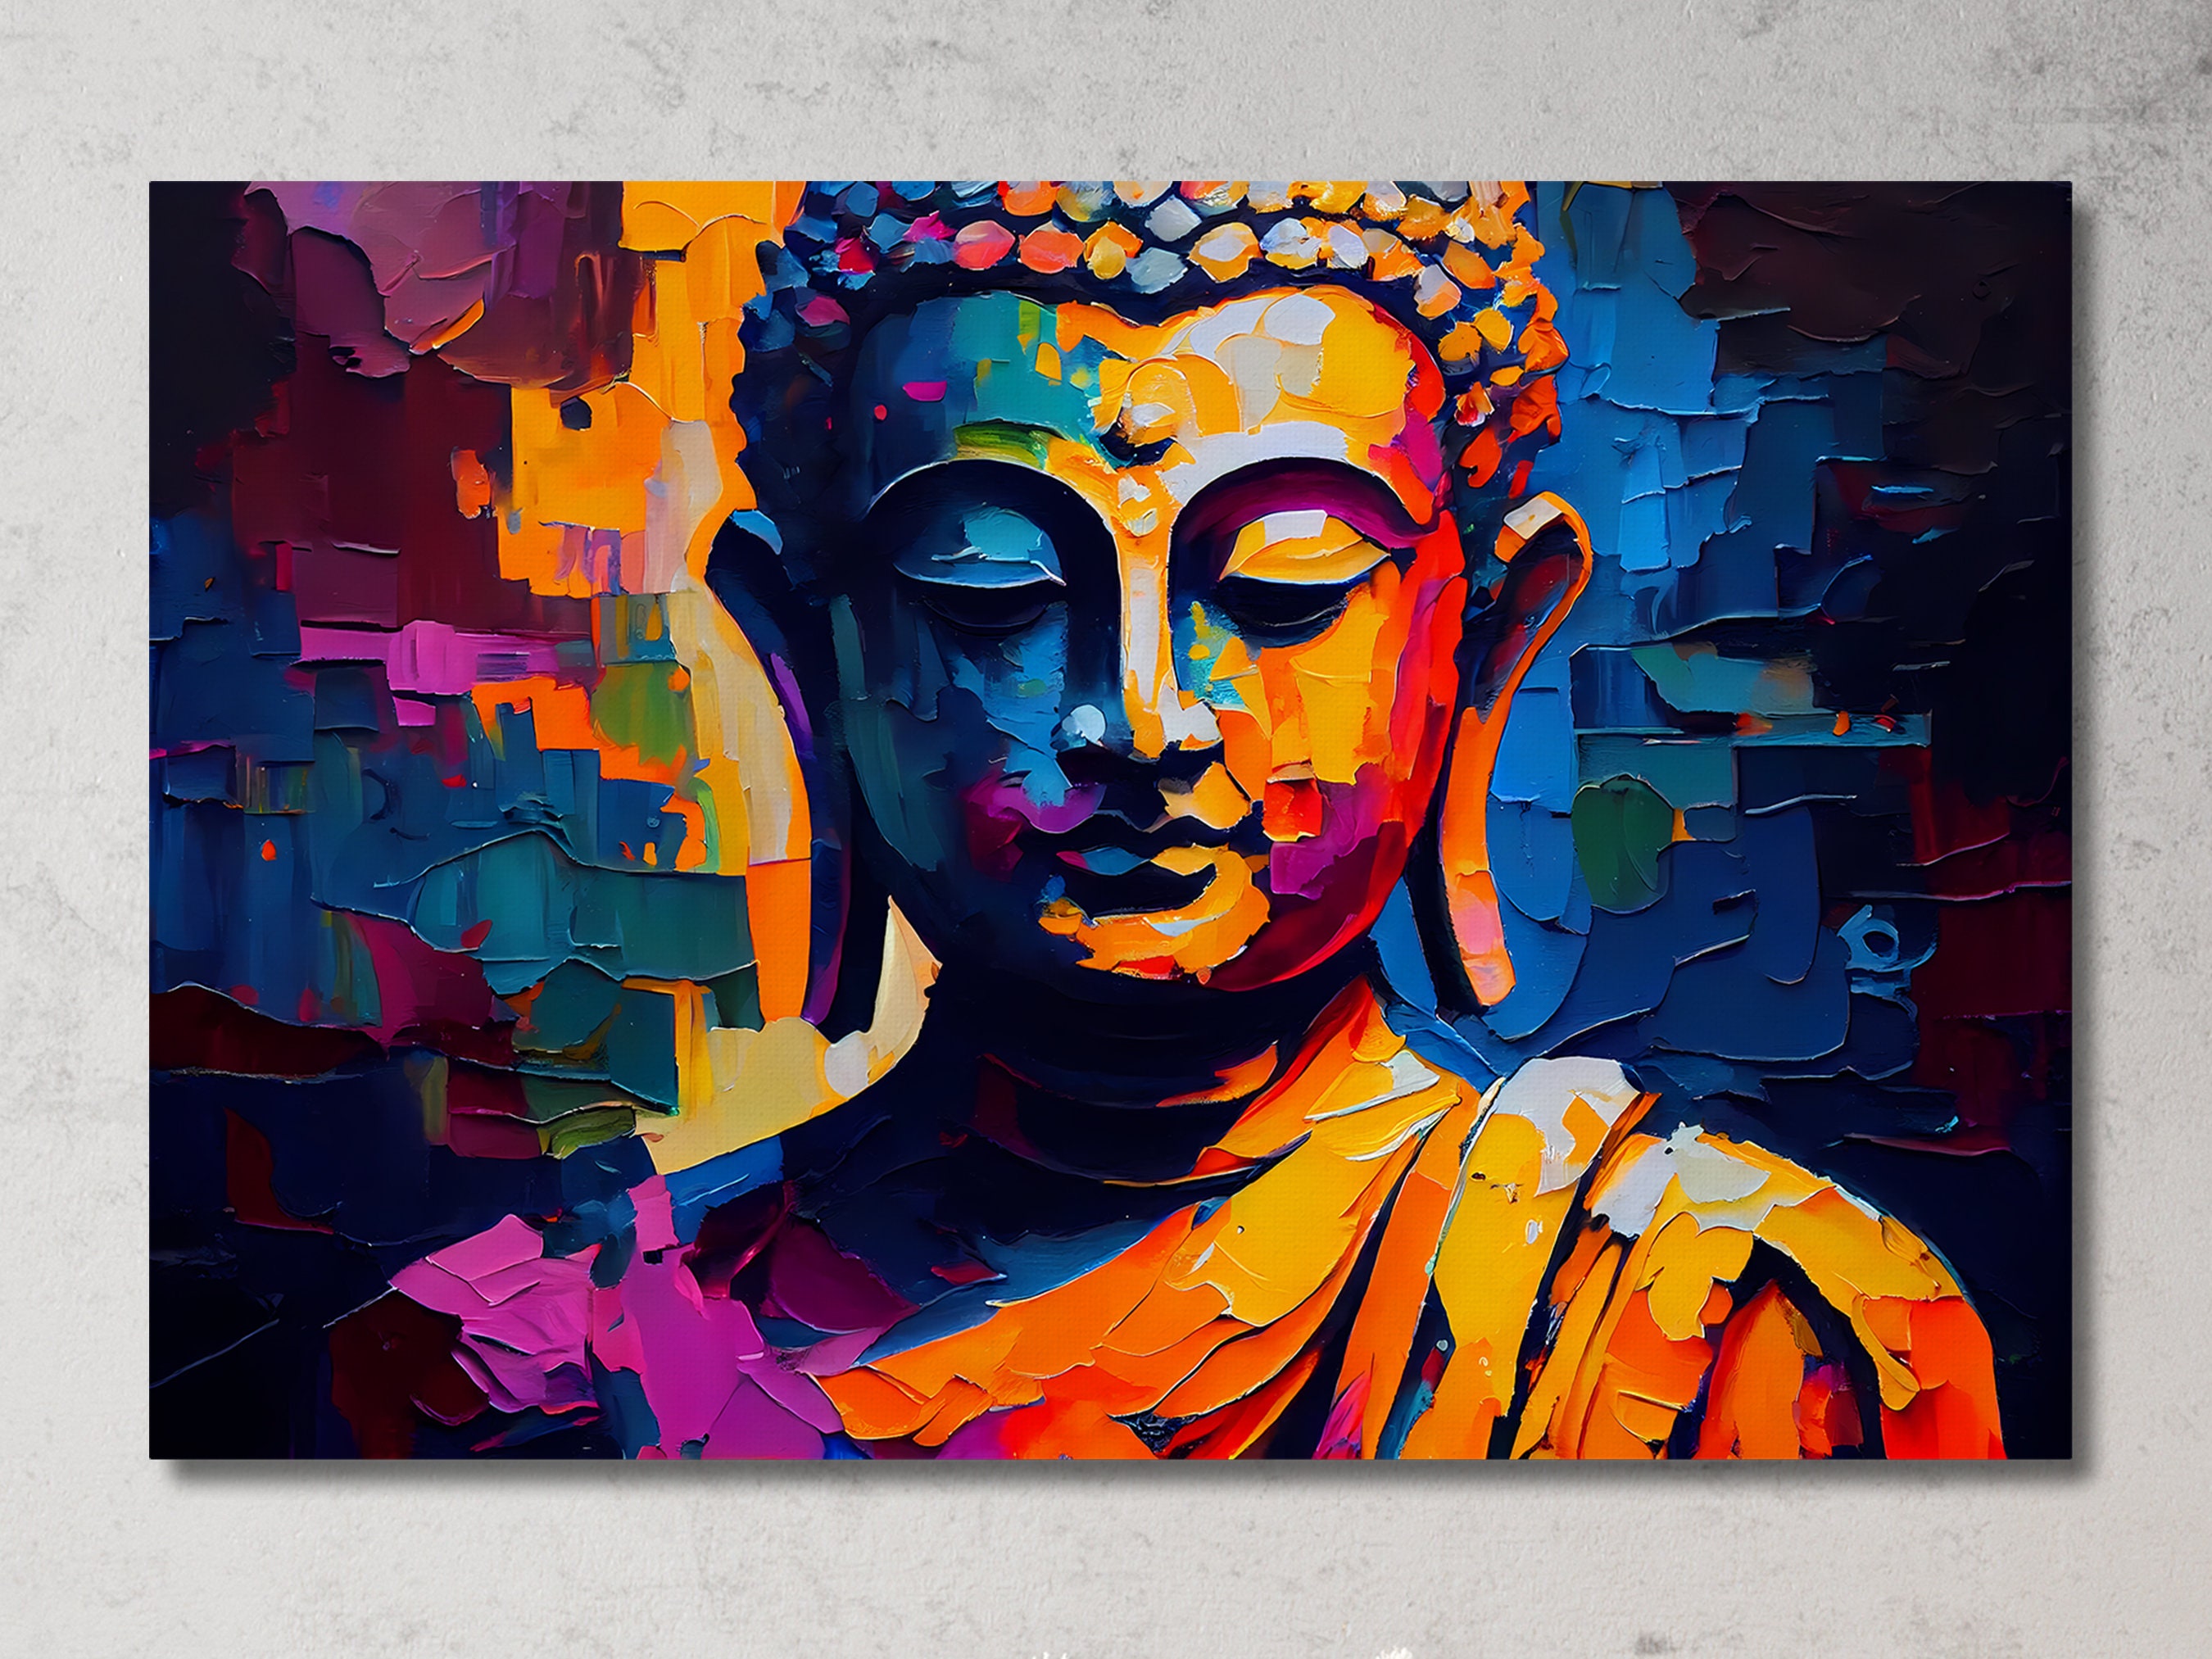 Large Buddha Canvas Painting – Yoga Mandala Shop